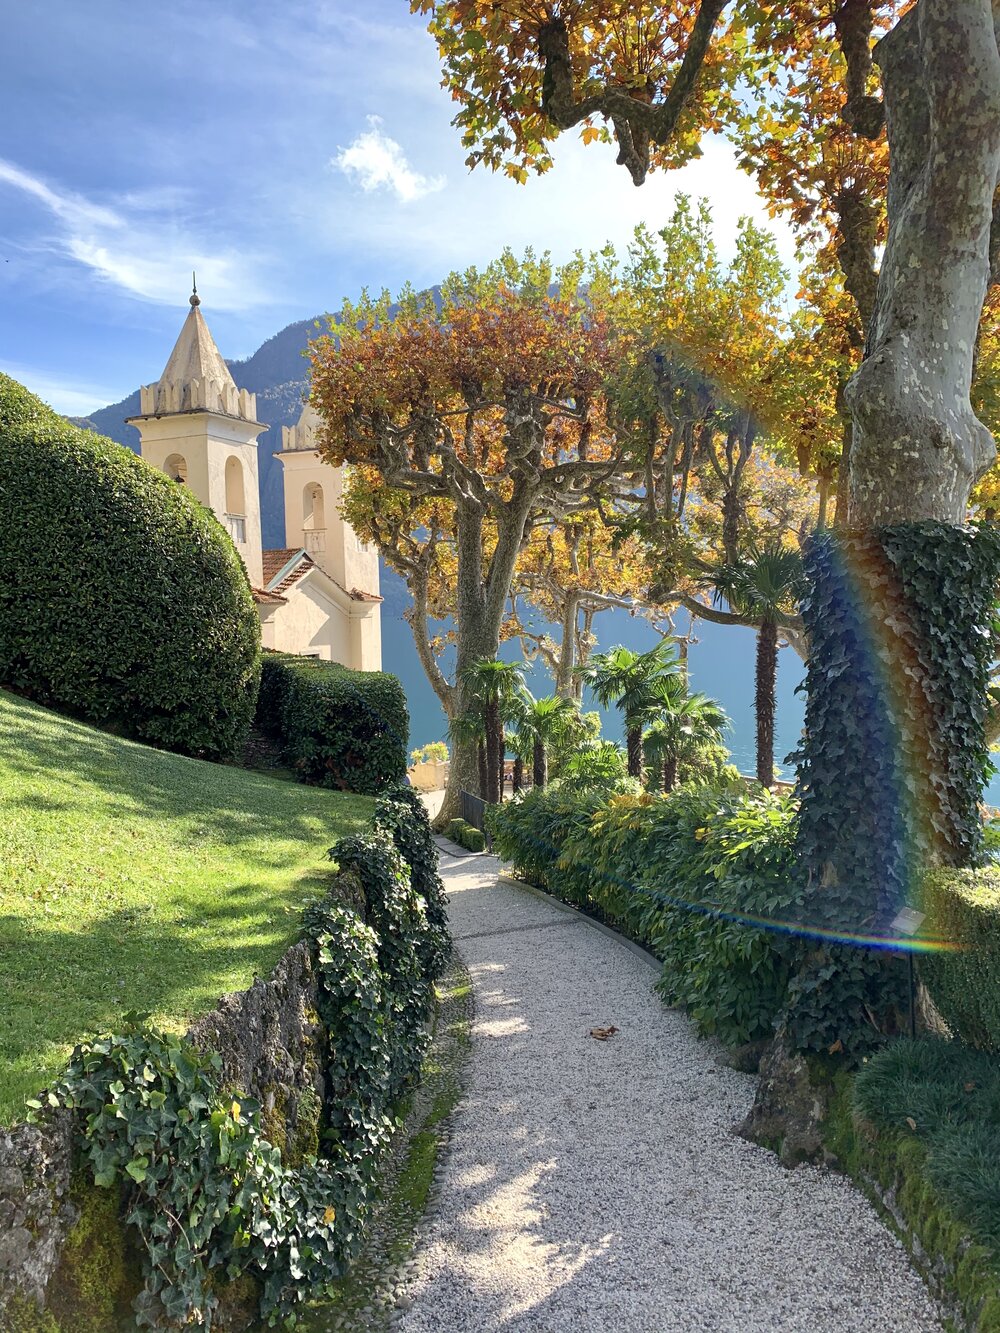 Fairy tale place - Villa del Balbianello, Lake Como